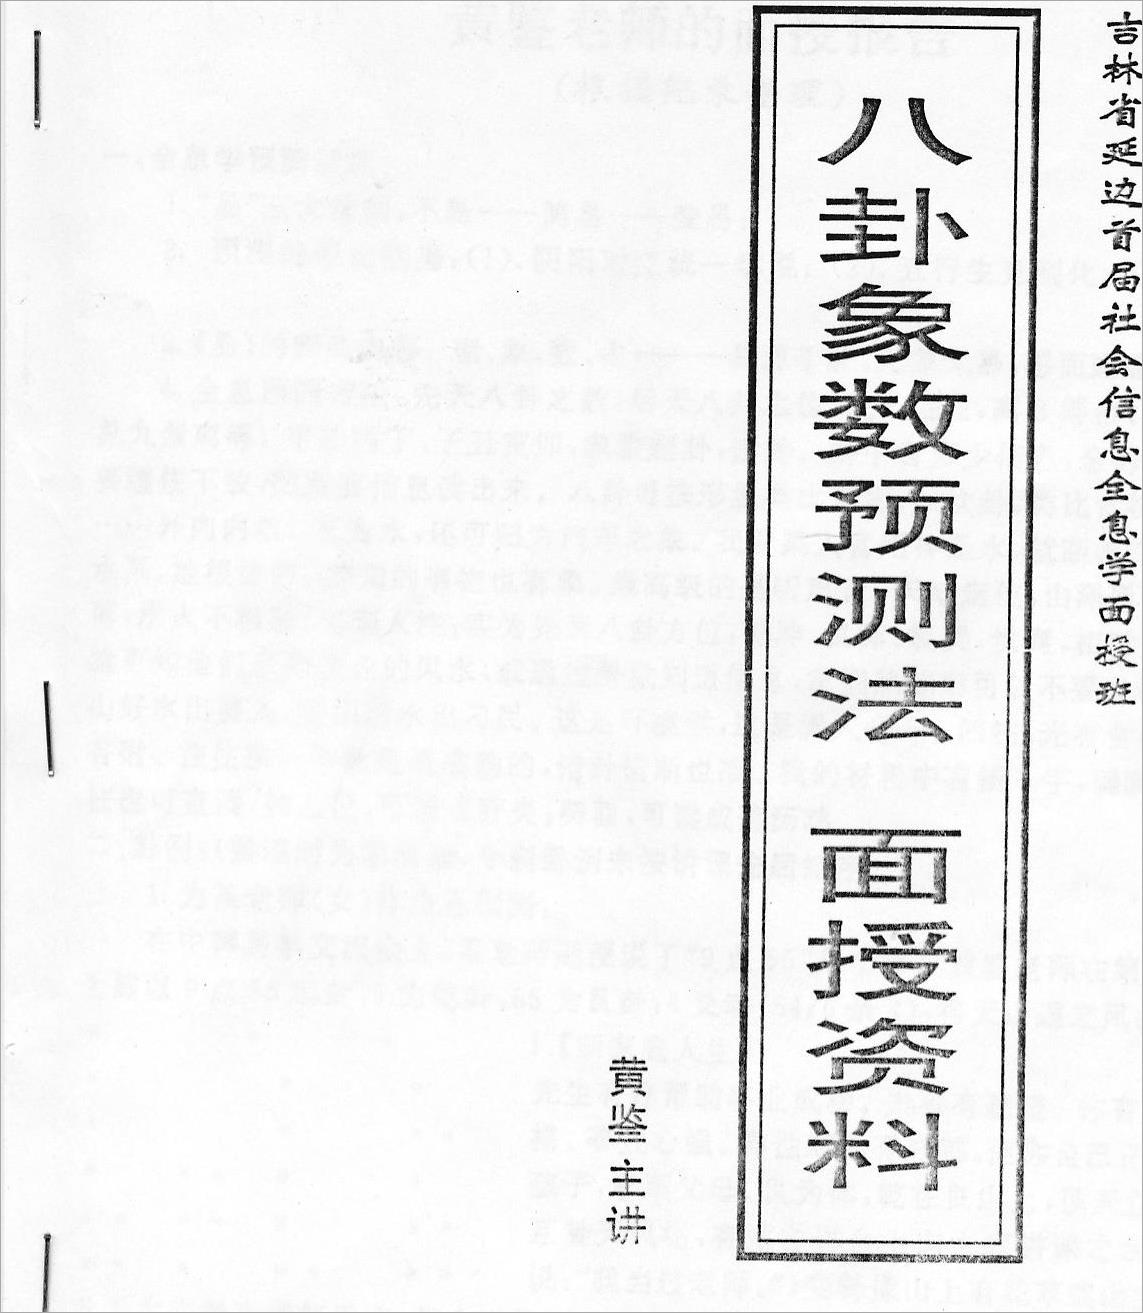 黄鉴-八卦象数预测法面授班学习辅导材料28页.pdf